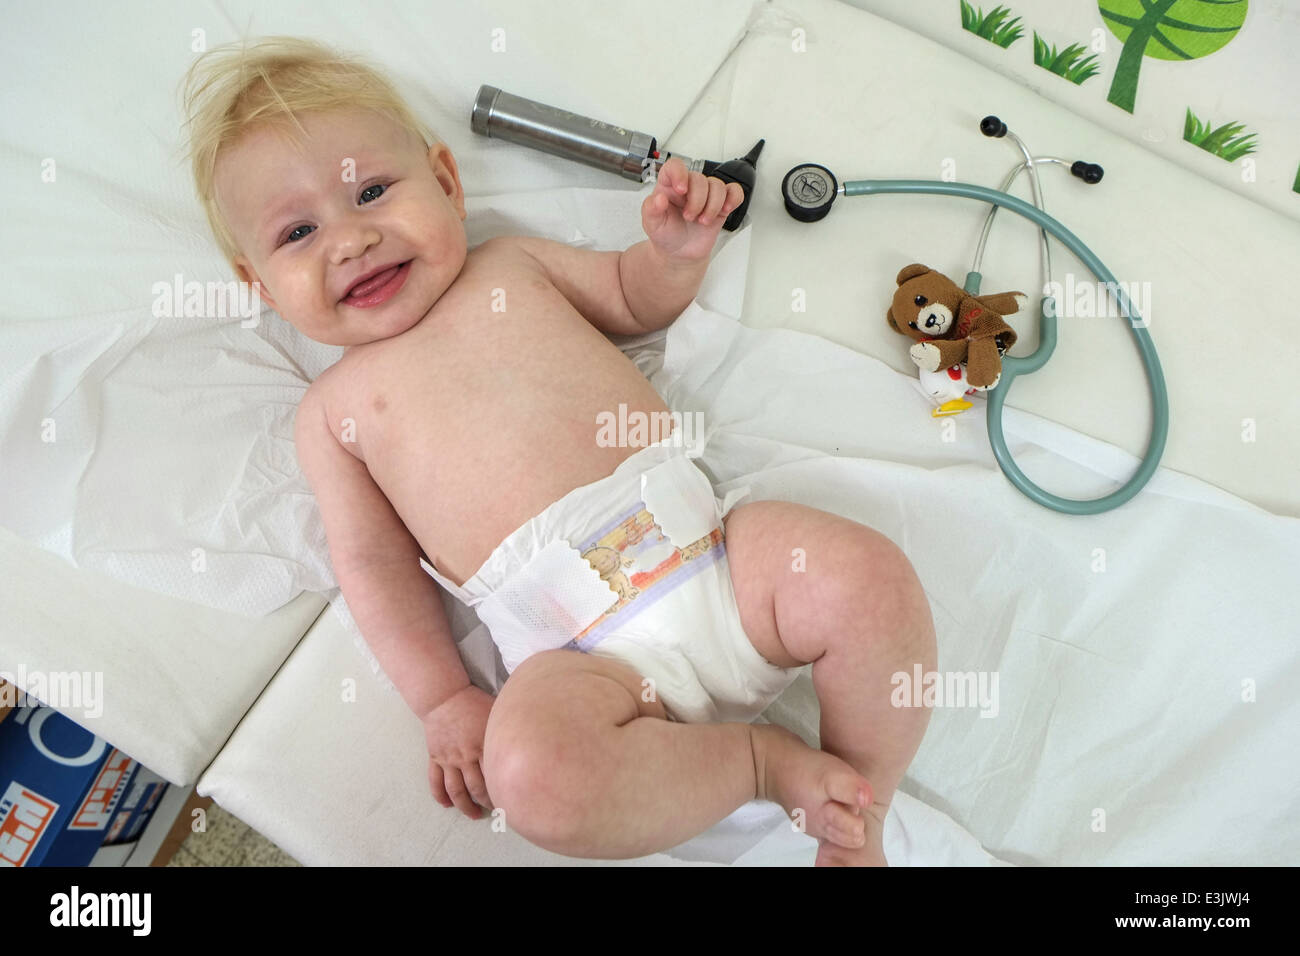 Ein Baby glücklich und entspannt bei einem routinemäßigen Besuch beim Arzt Stockfoto